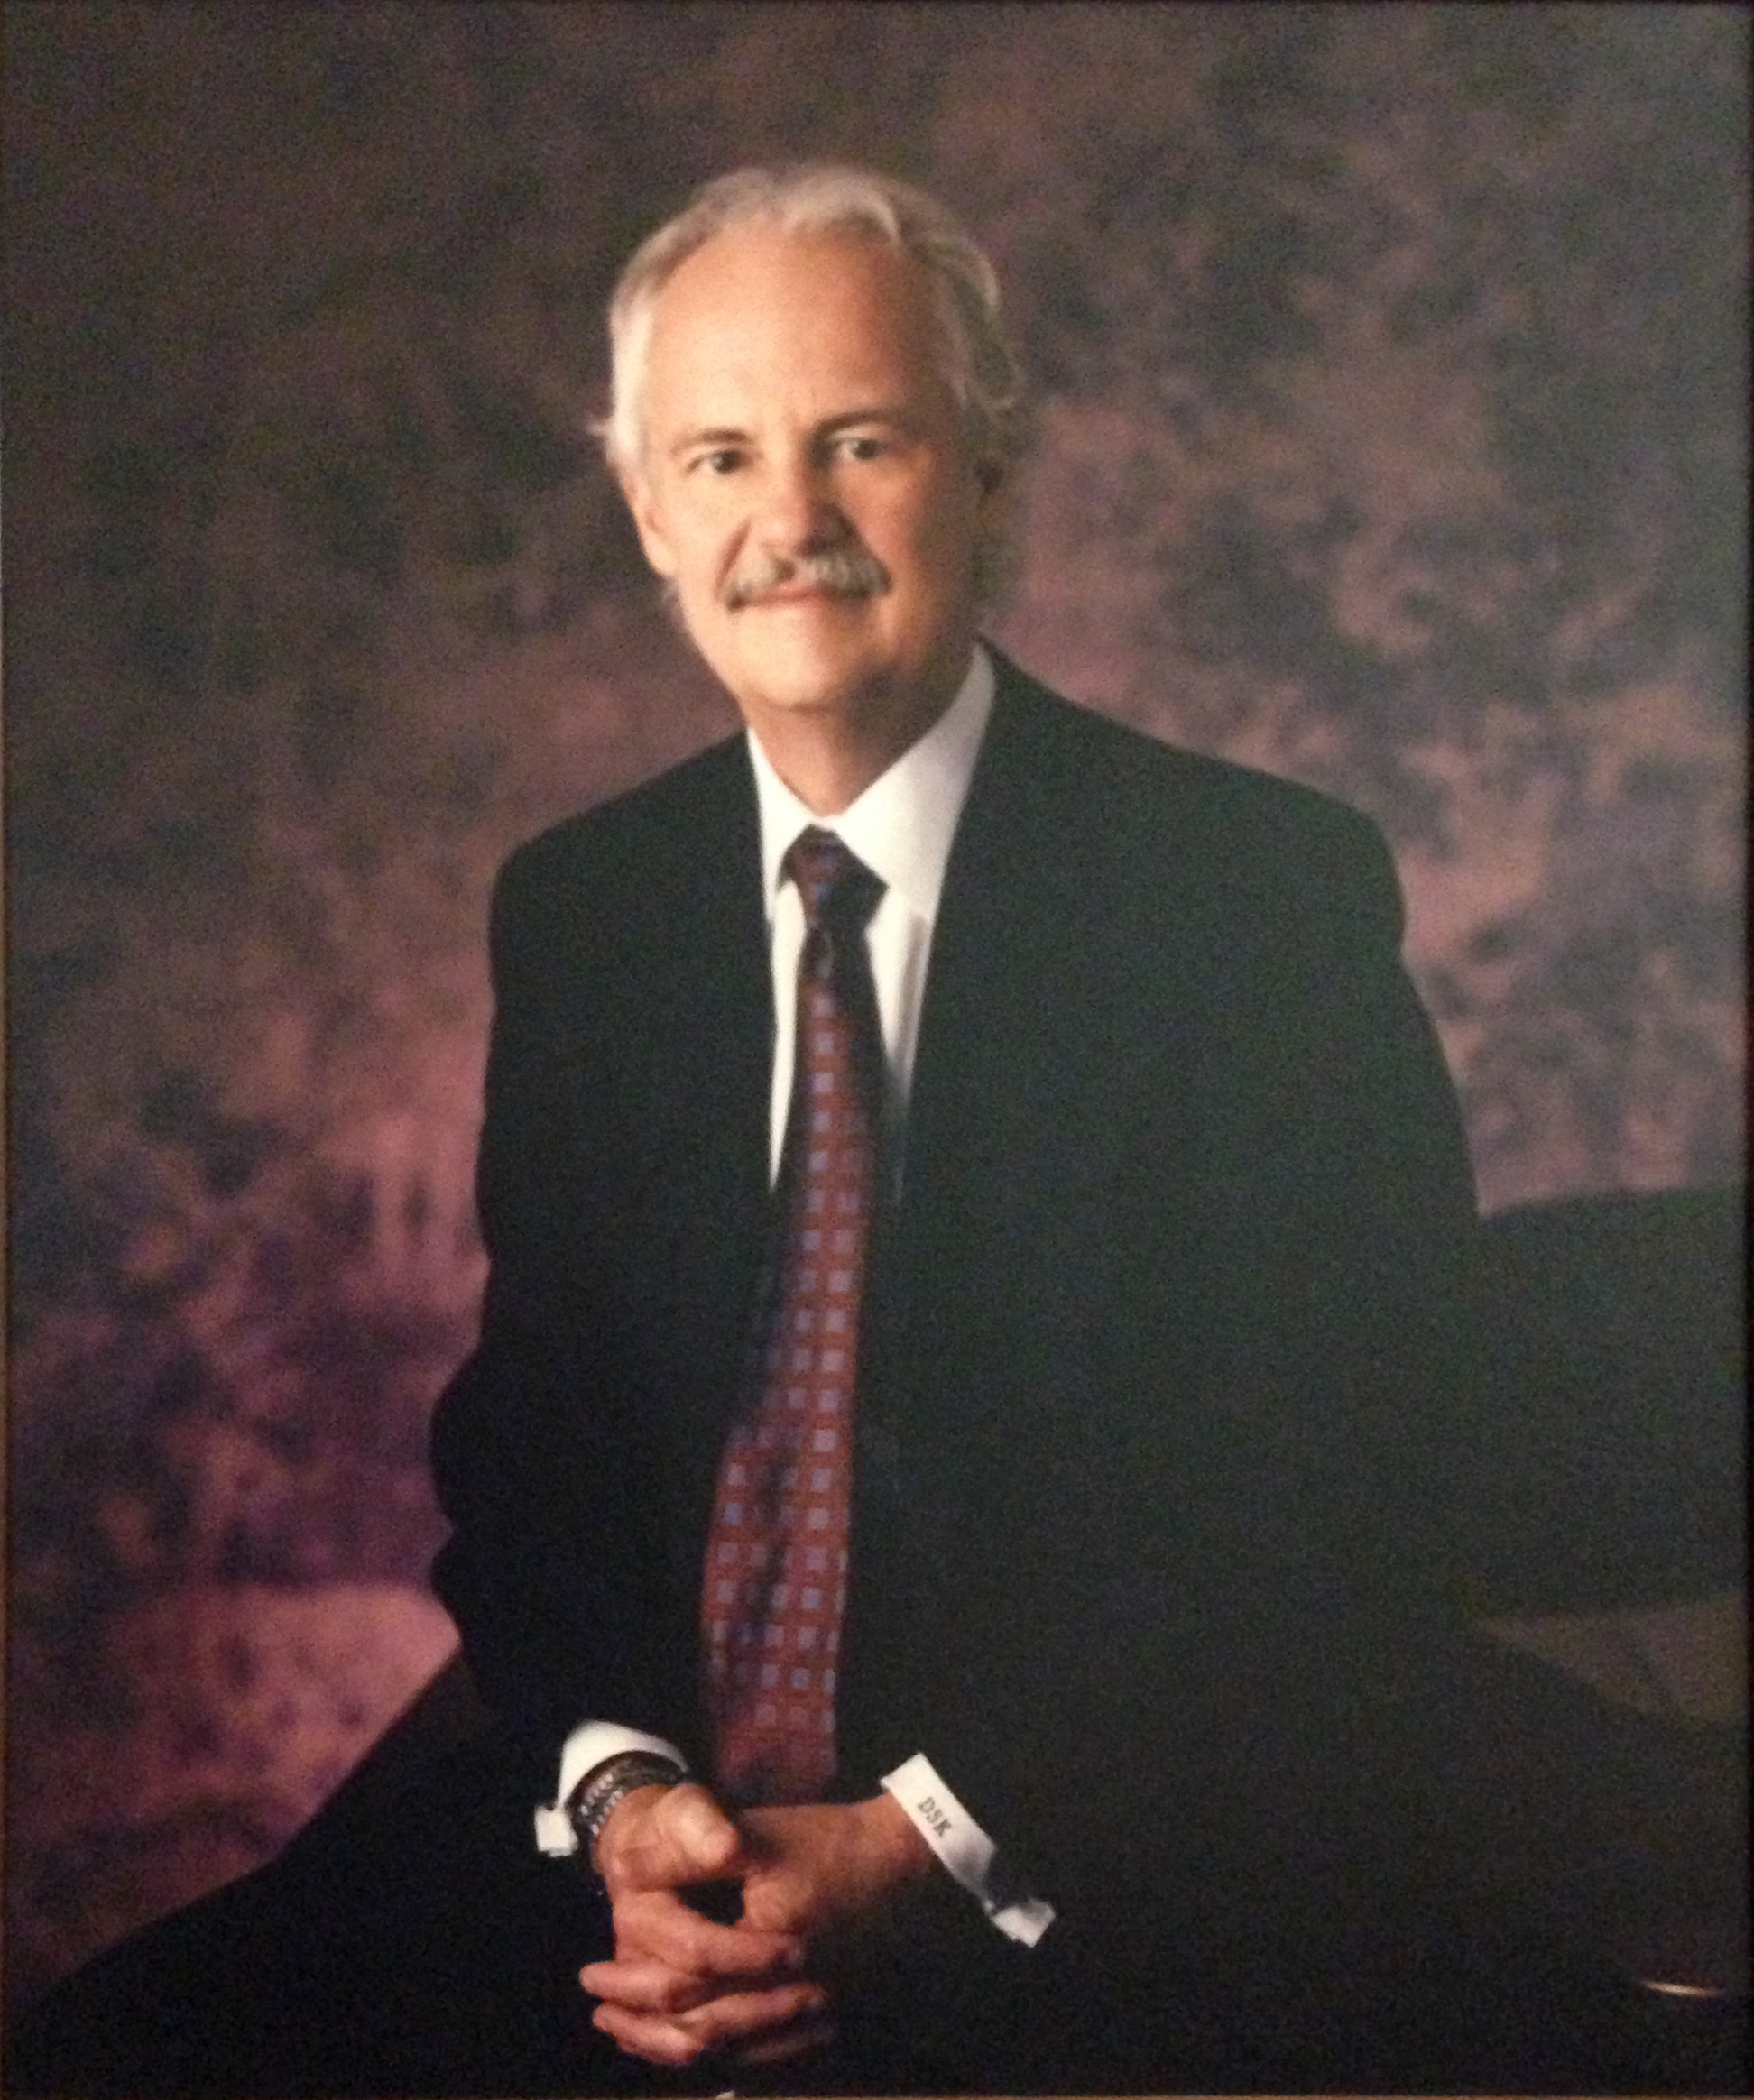 David S. Kidwell. Dean 1988-1992.